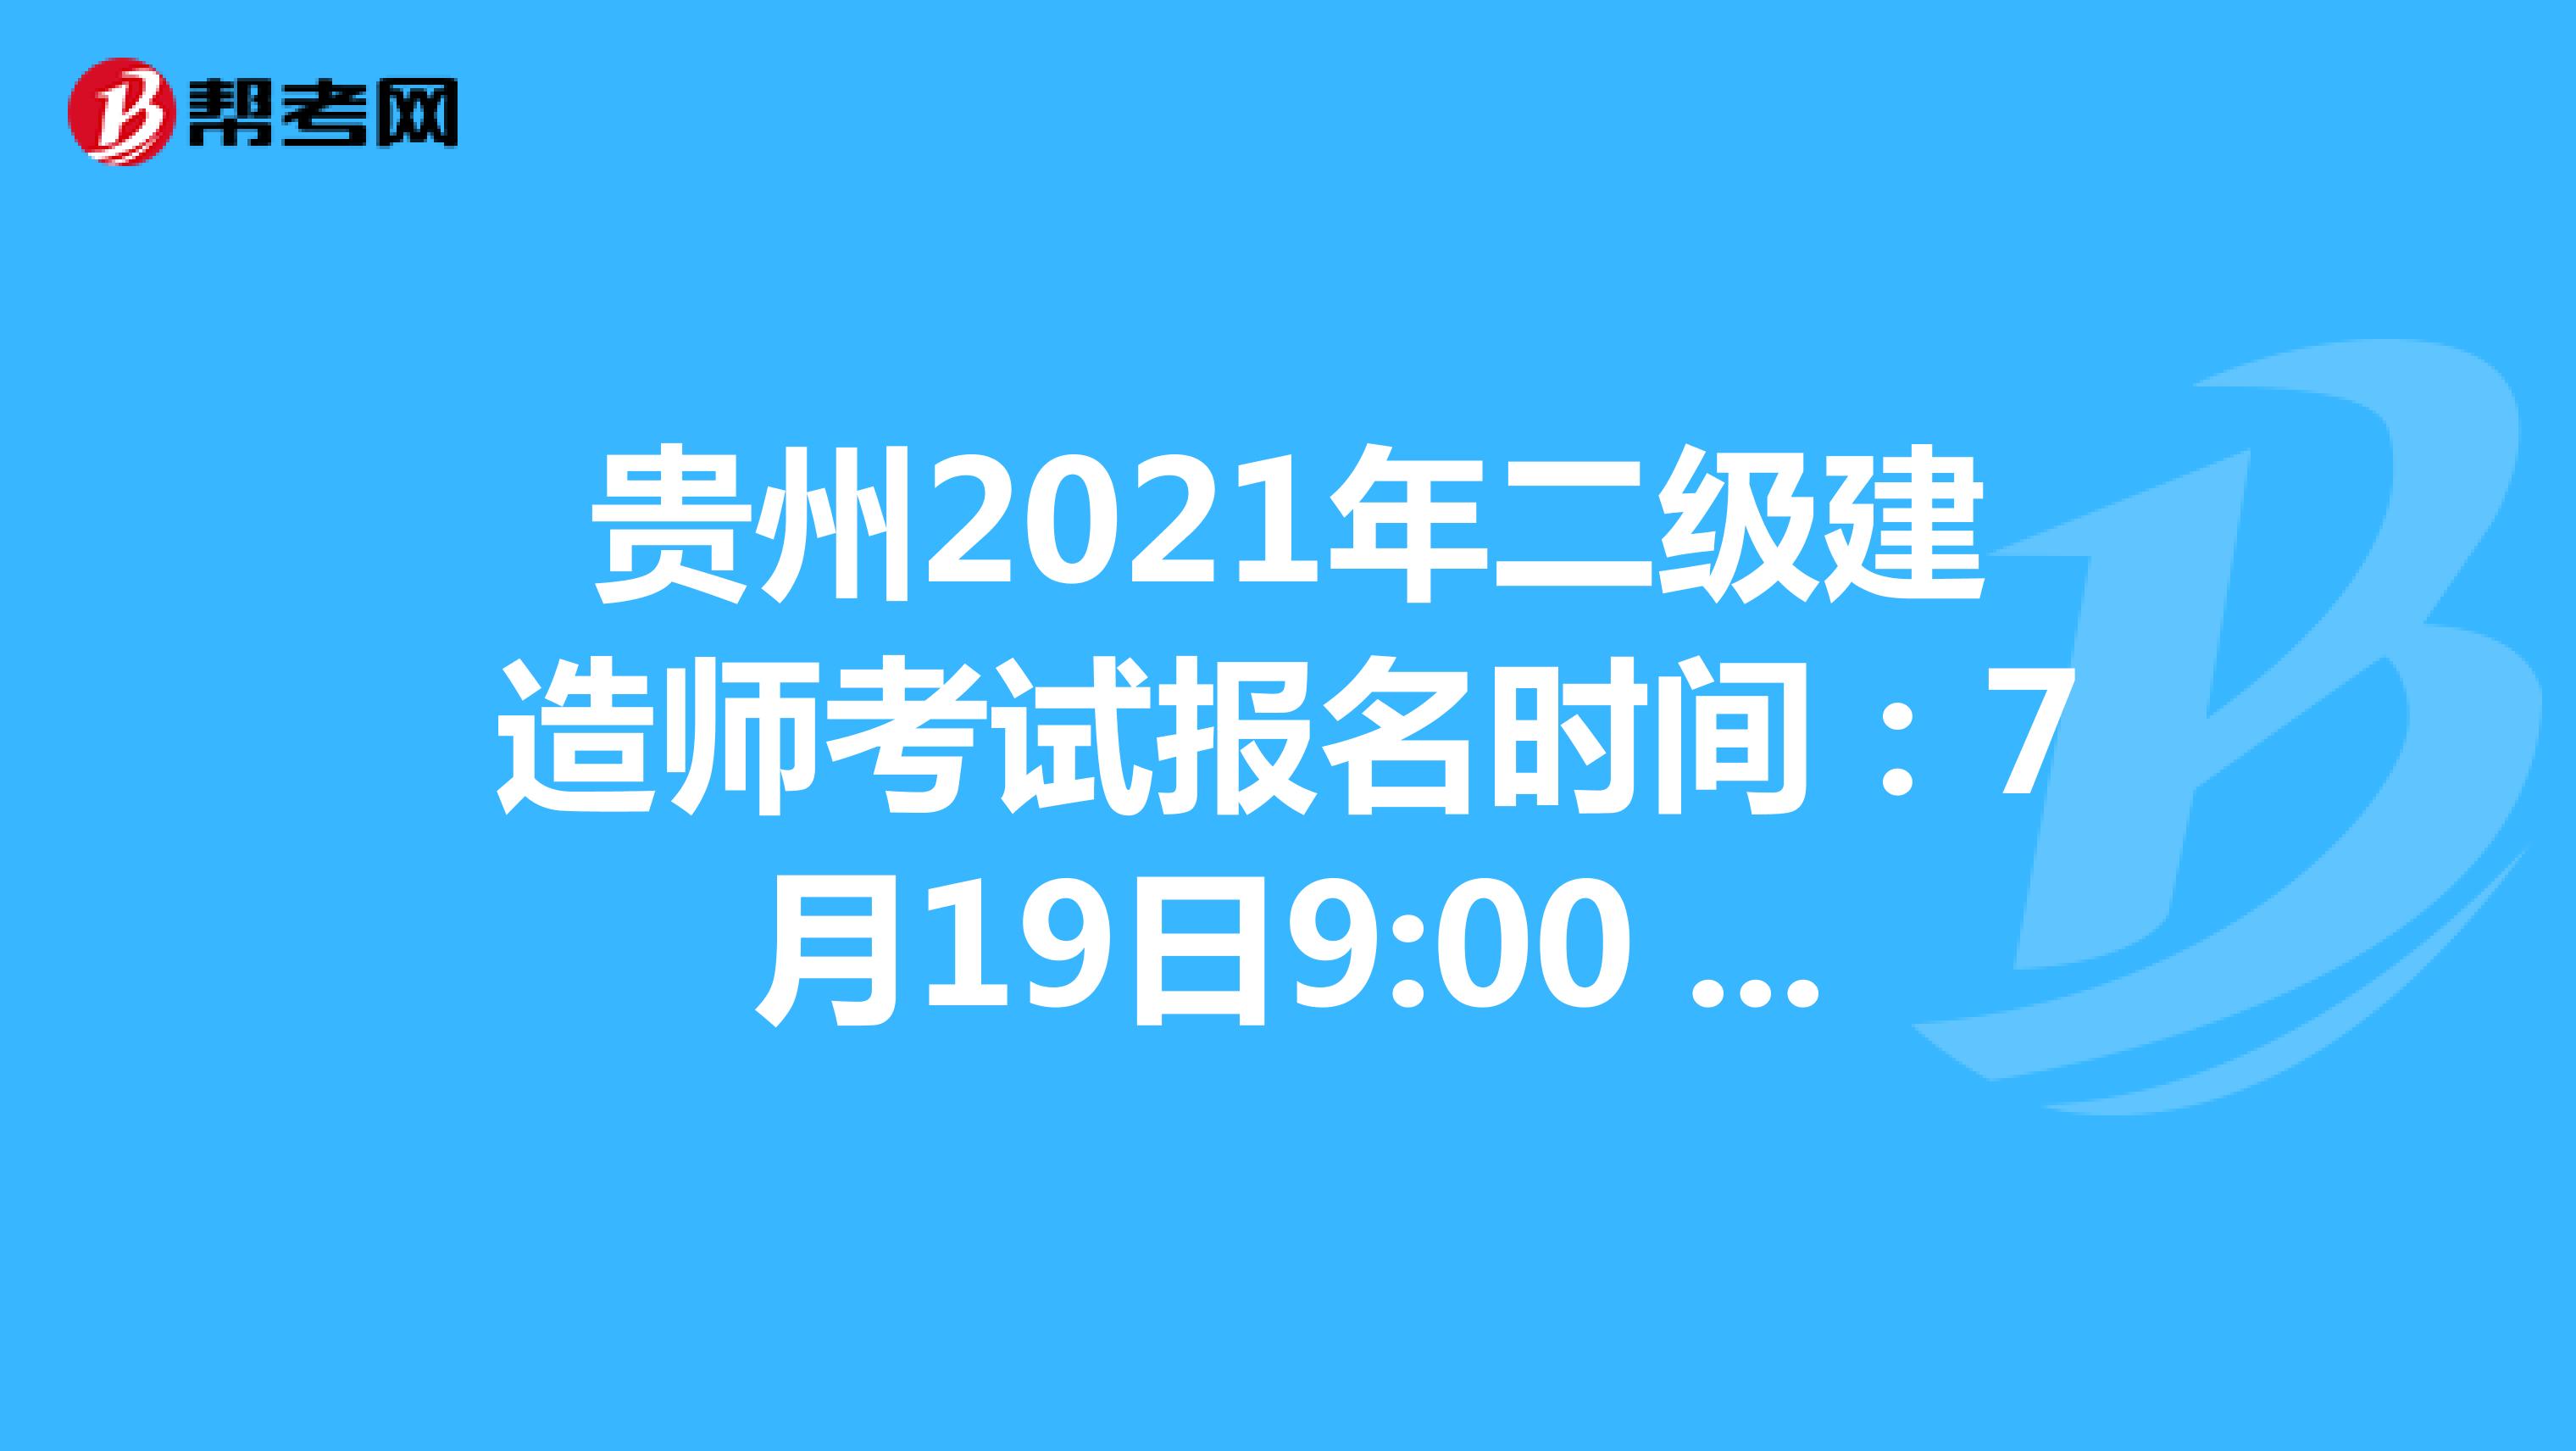 贵州2021年二级建造师考试报名时间：7月19日9:00 -7月30日16:00